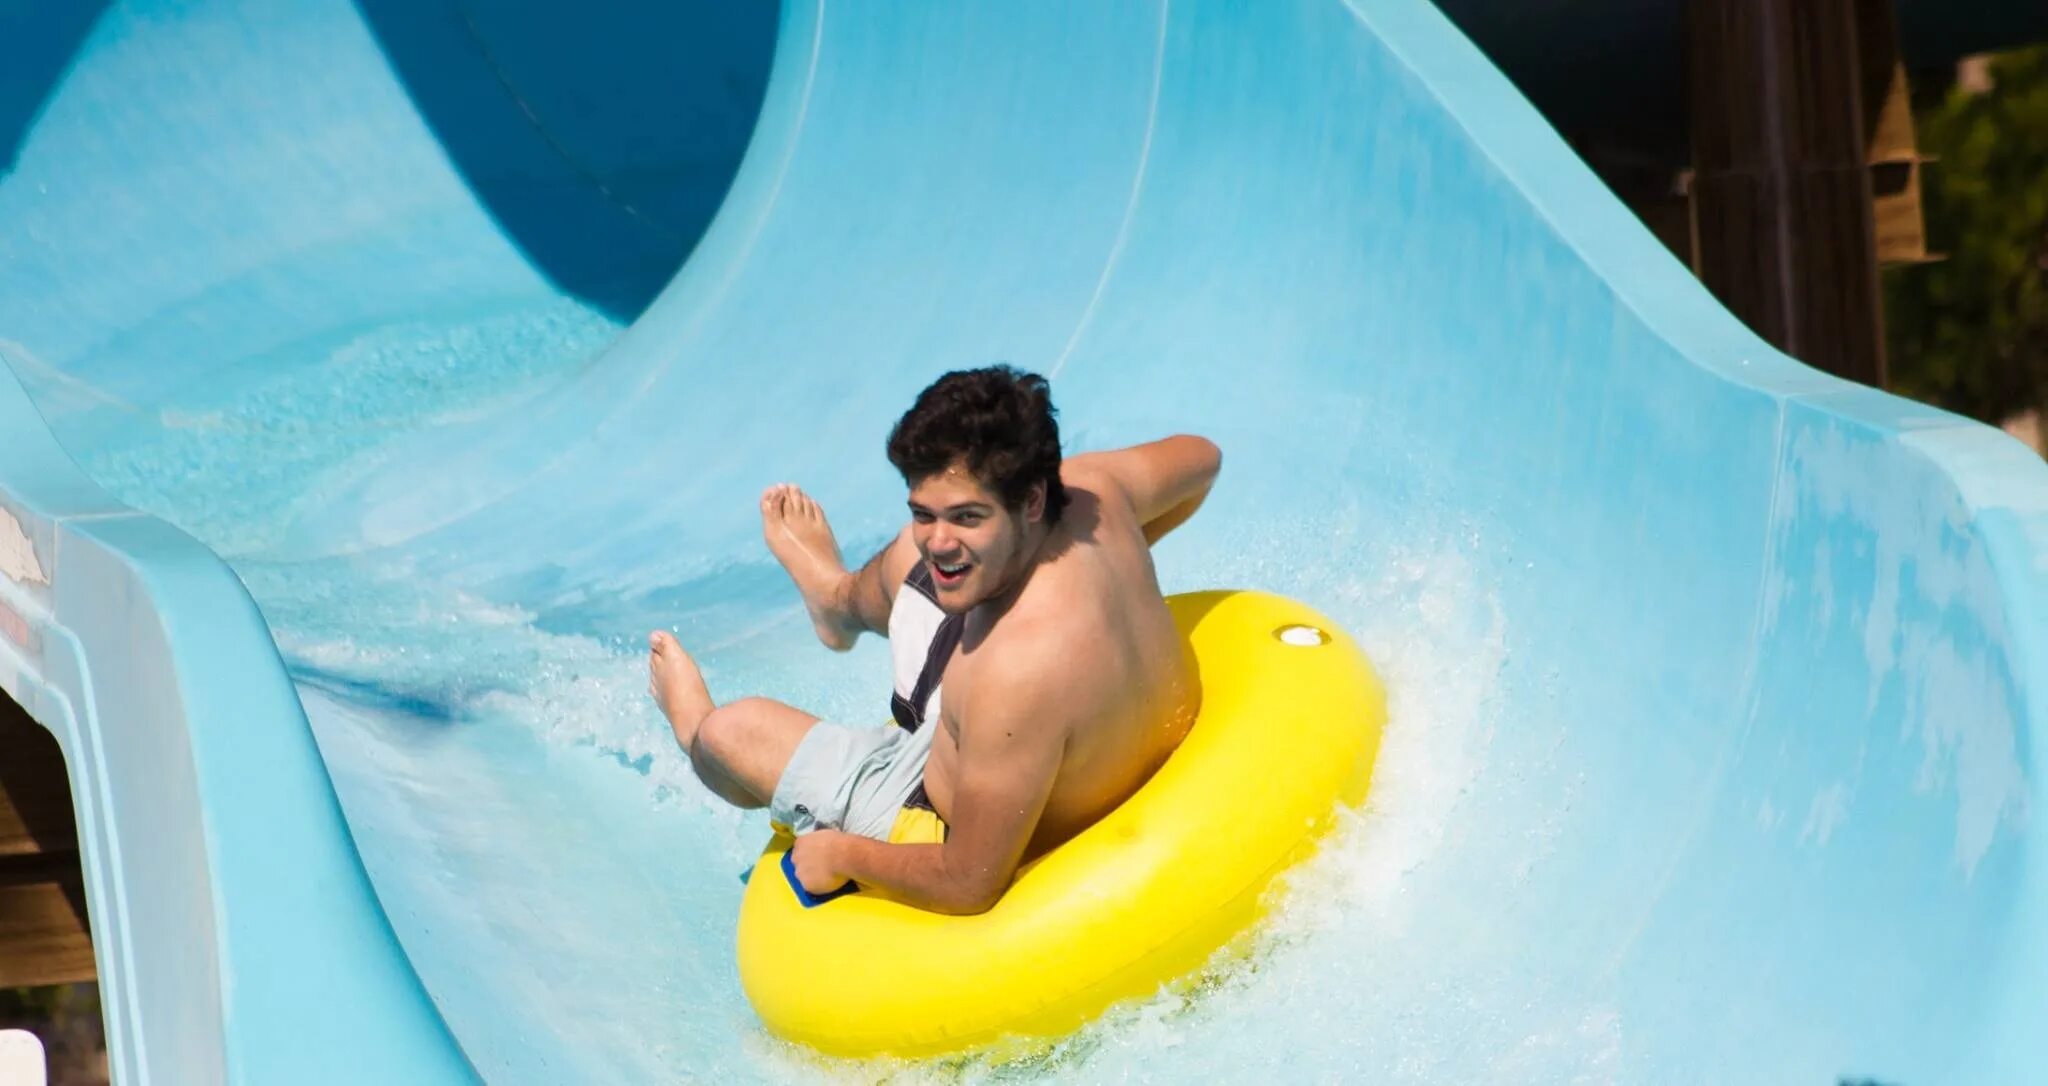 Бассейны развлечения. Развлечения в бассейне. Надувной аквапарк. Надувной аквапарк в Дубае. Аттракцион бассейн.